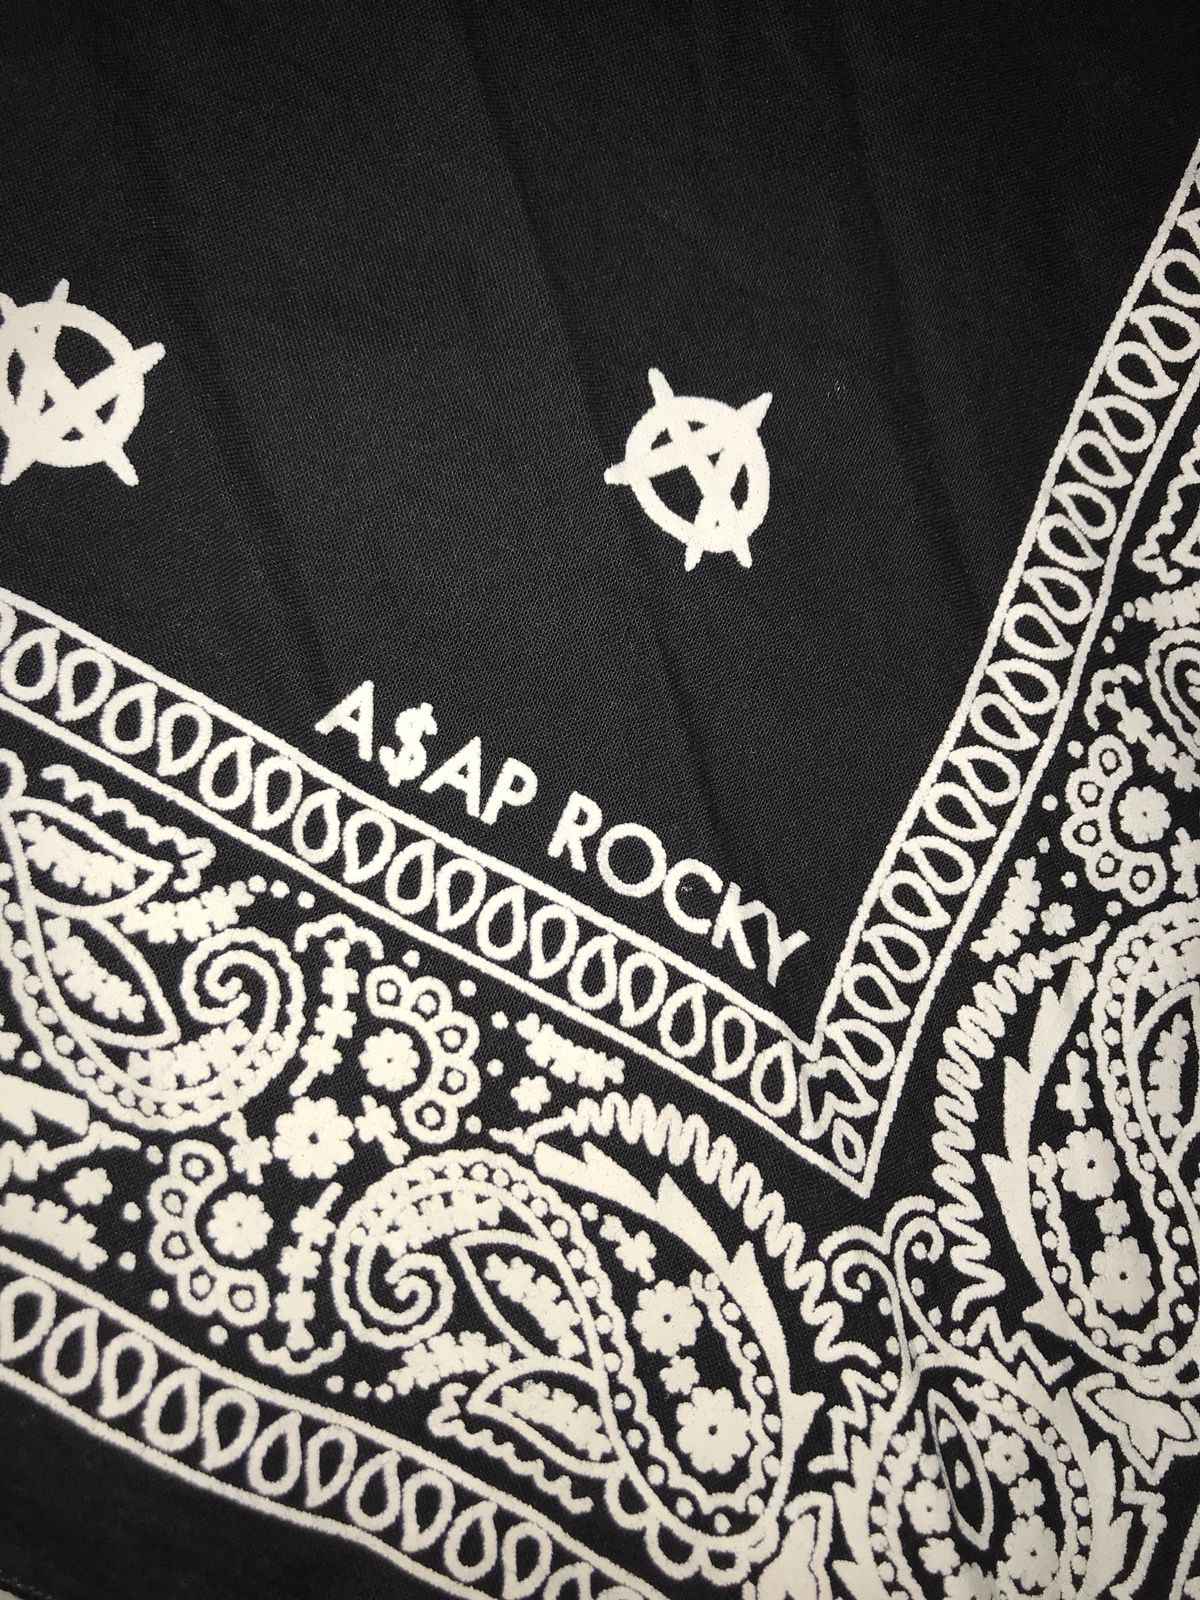 Asap Rocky A$AP ROCKY BANDANA Size ONE SIZE - 2 Preview